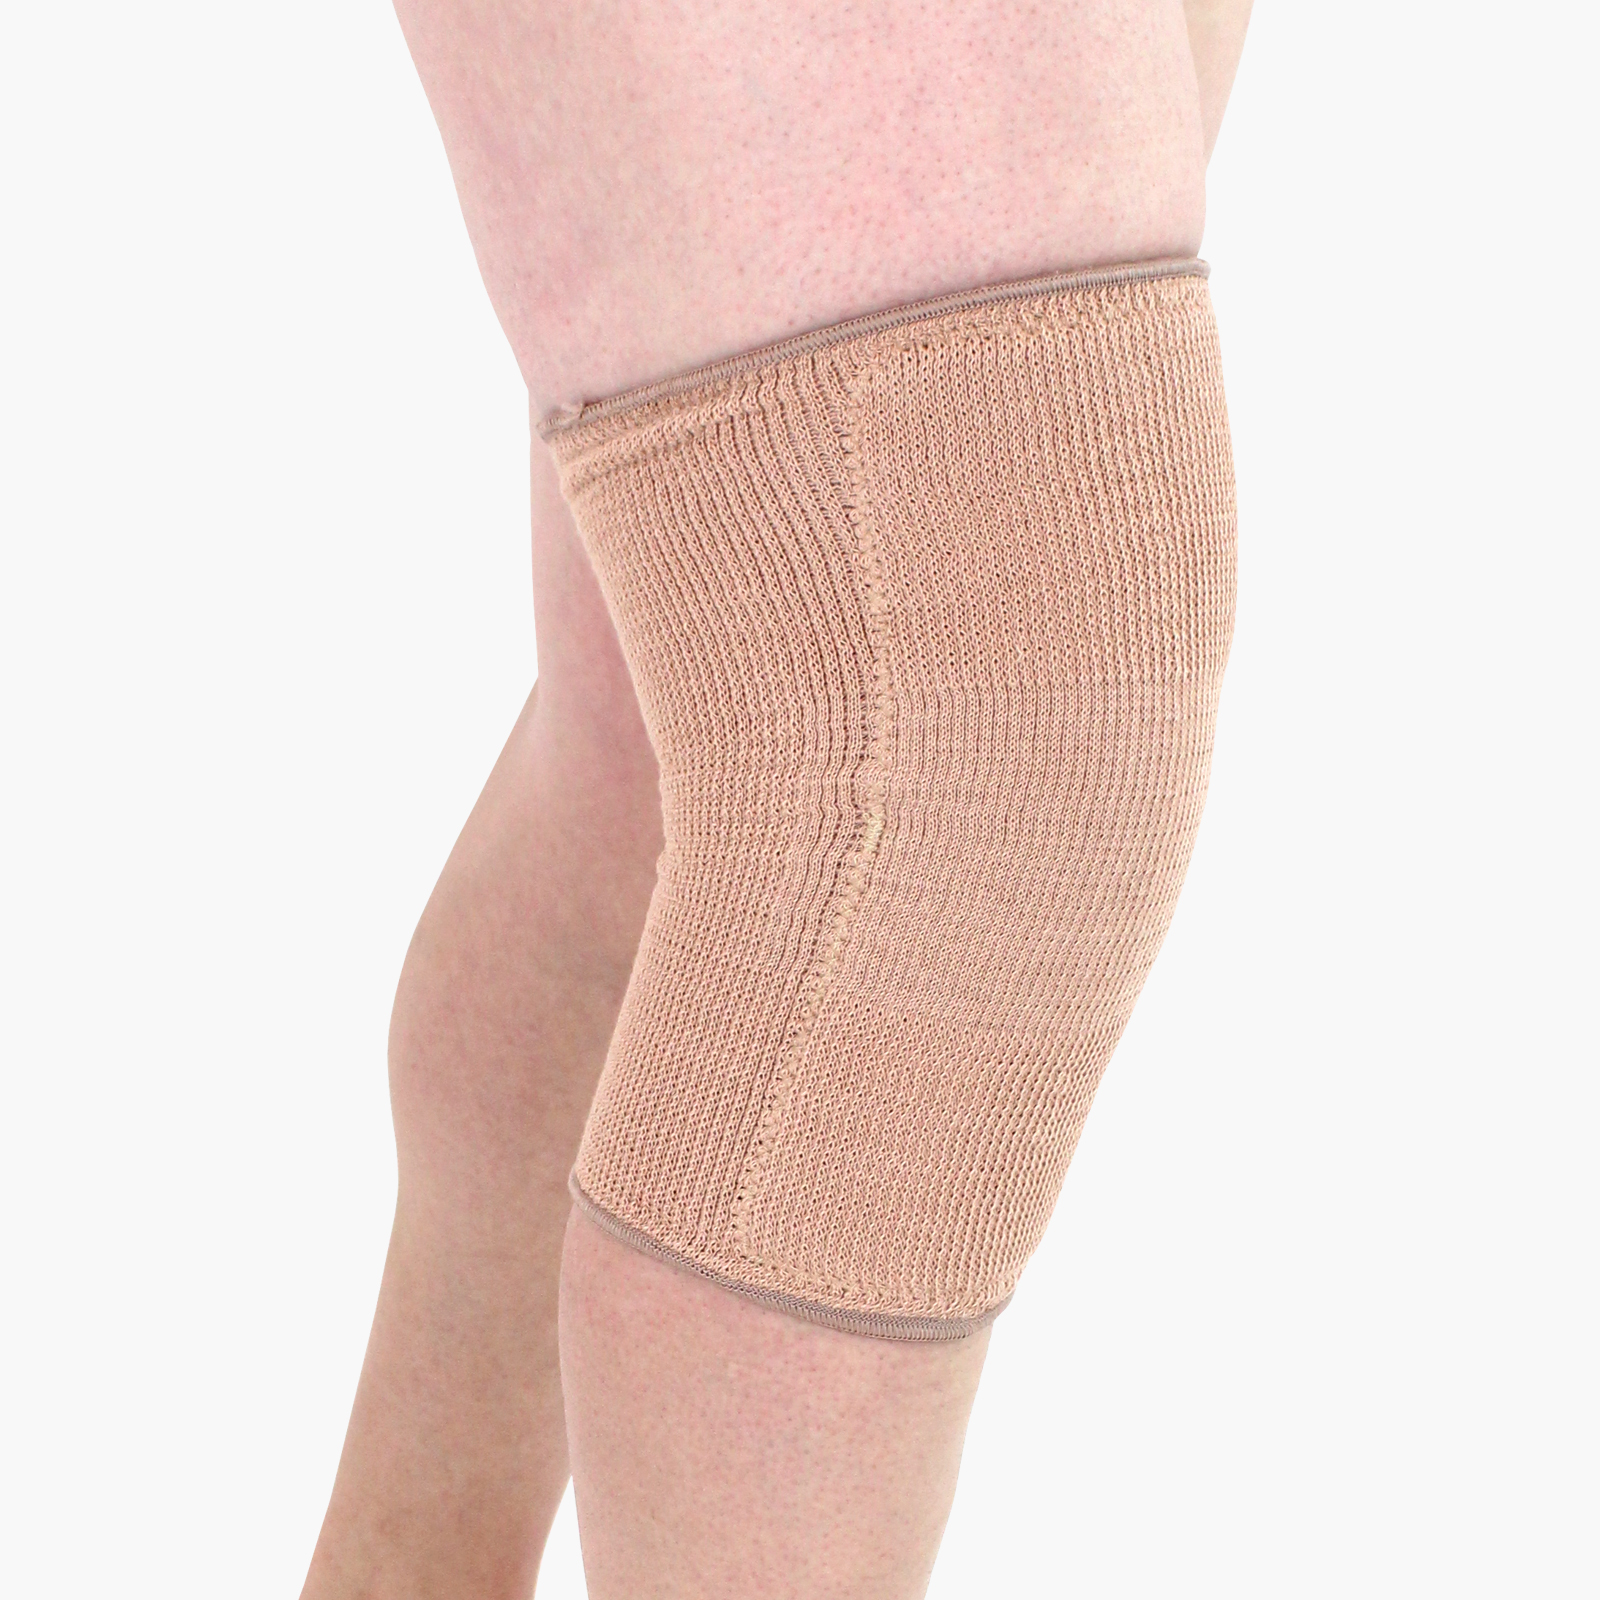 Arthritic Knee Sleeve - Beagle Orthopaedic